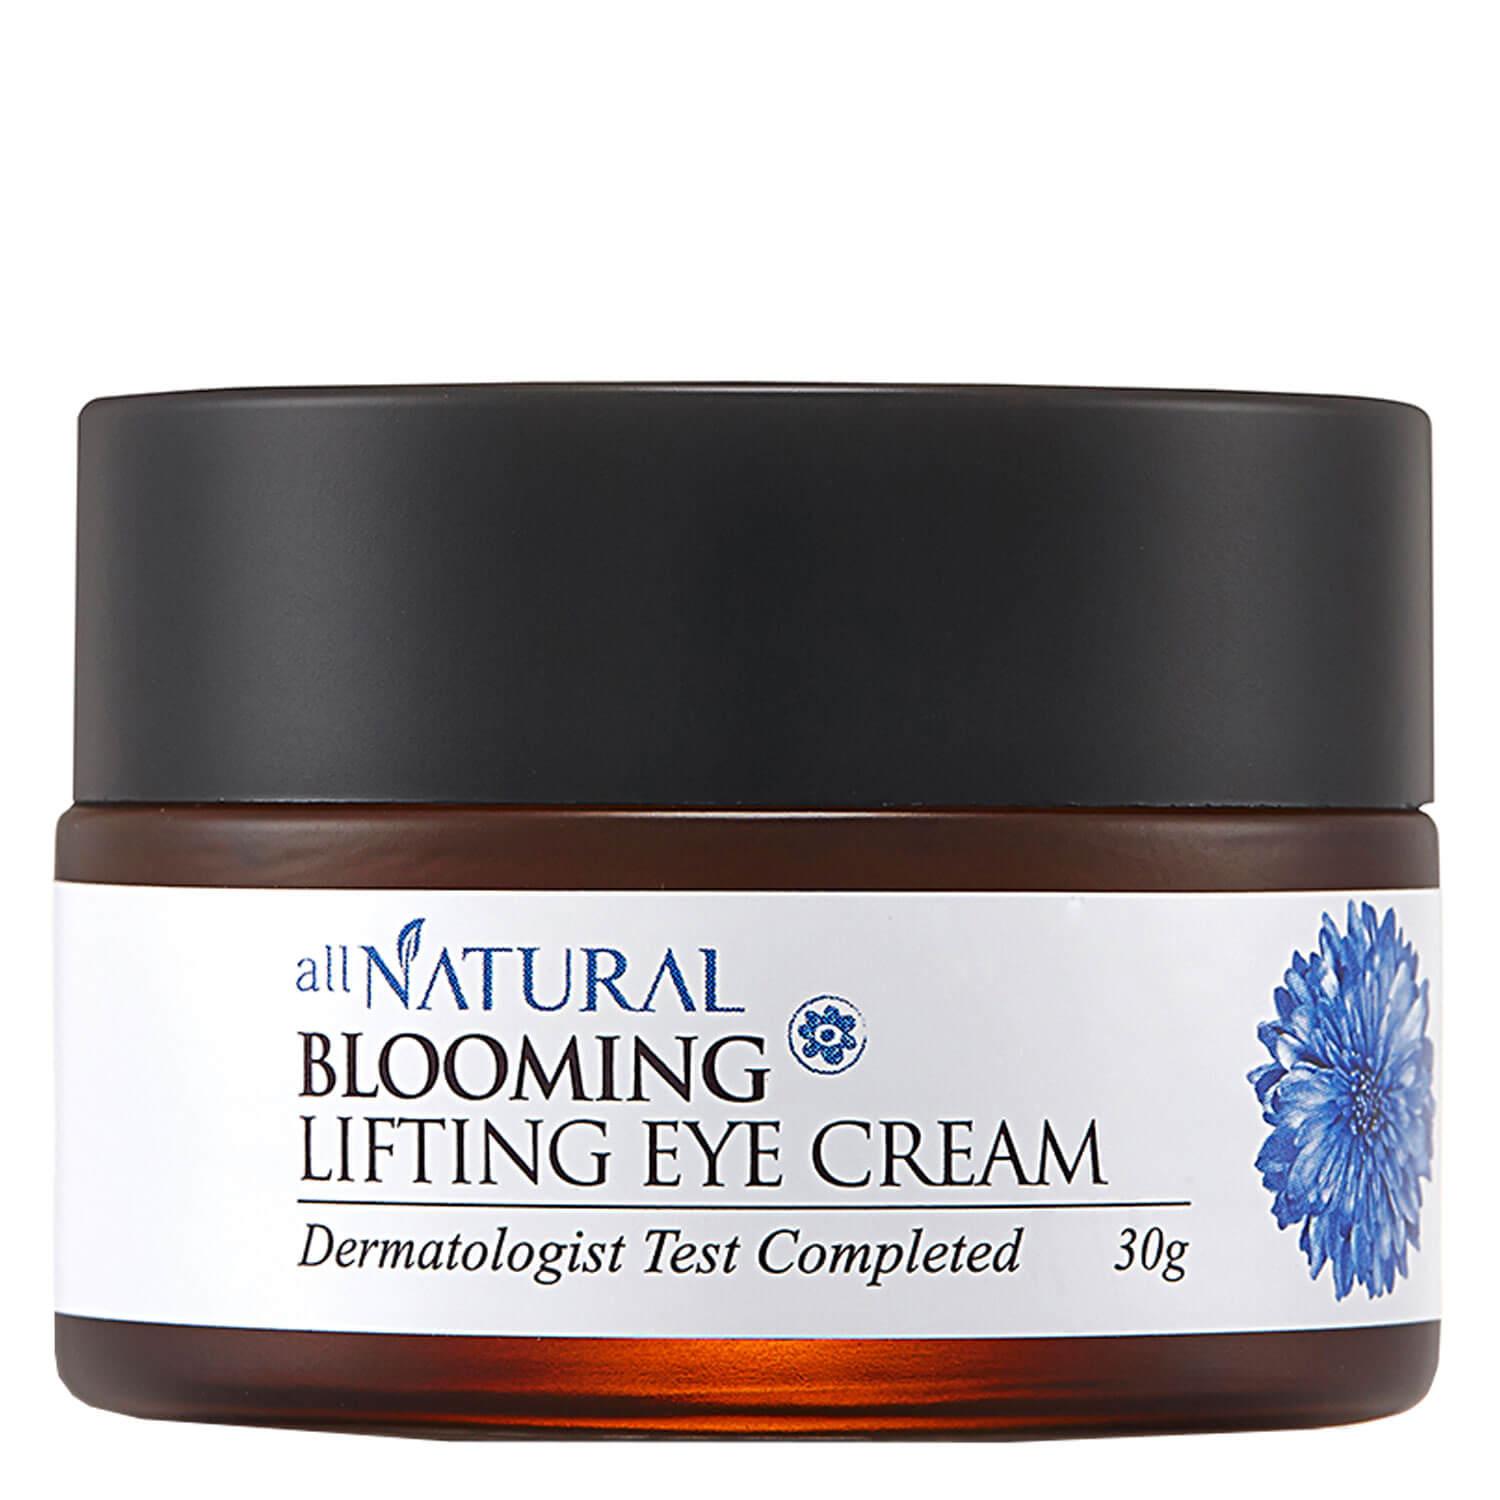 all NATURAL - Blooming Lifting Eye Cream